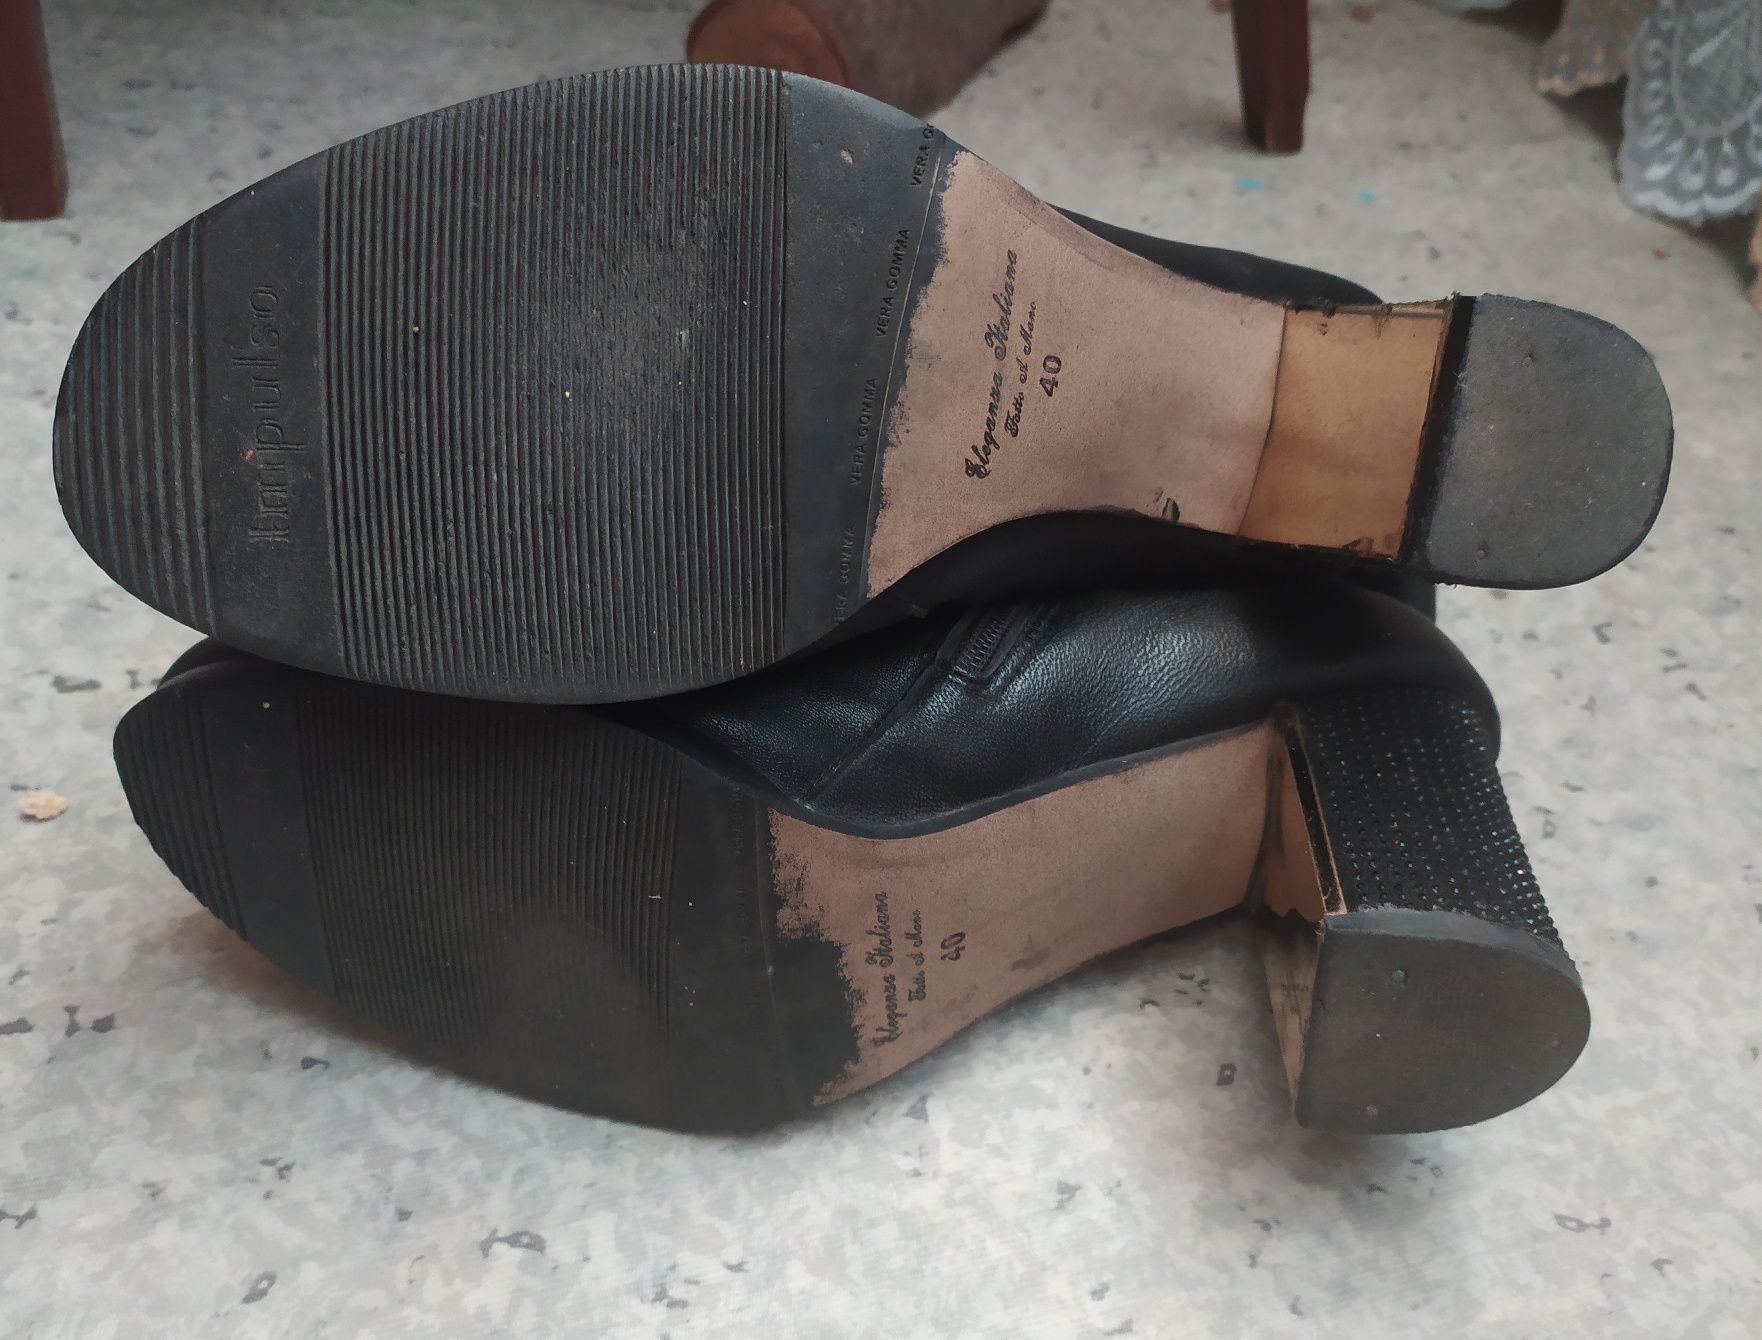 Сапожки ботинки итальянские демисезонные на каблуке со стразами Vera G